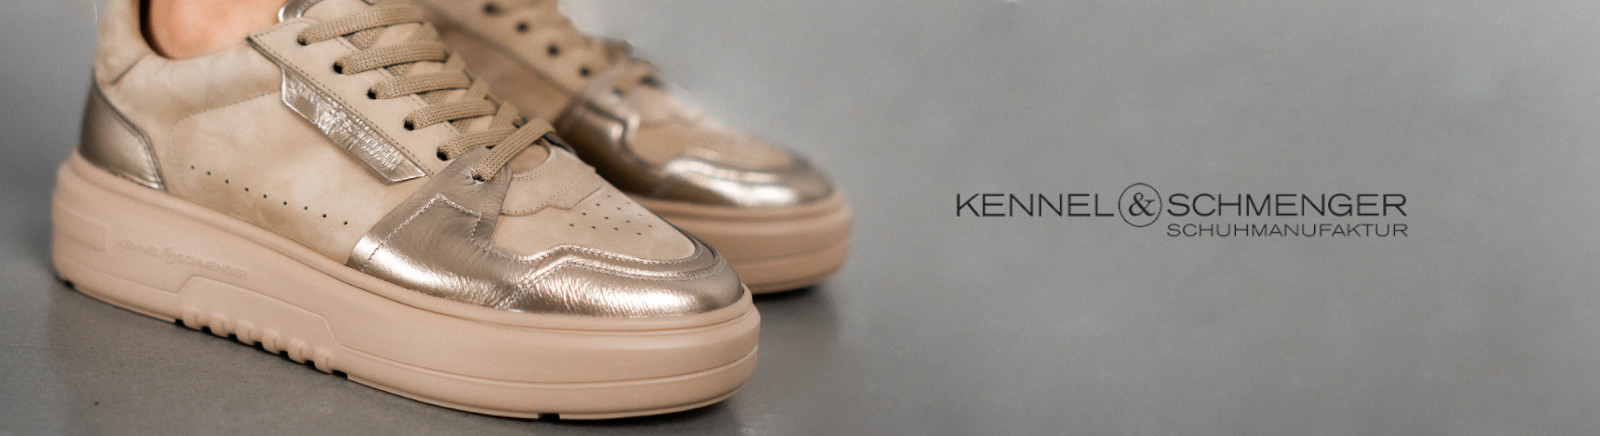 Kennel & Schmenger Ankle Boots für Damen im Online-Shop von GISY kaufen